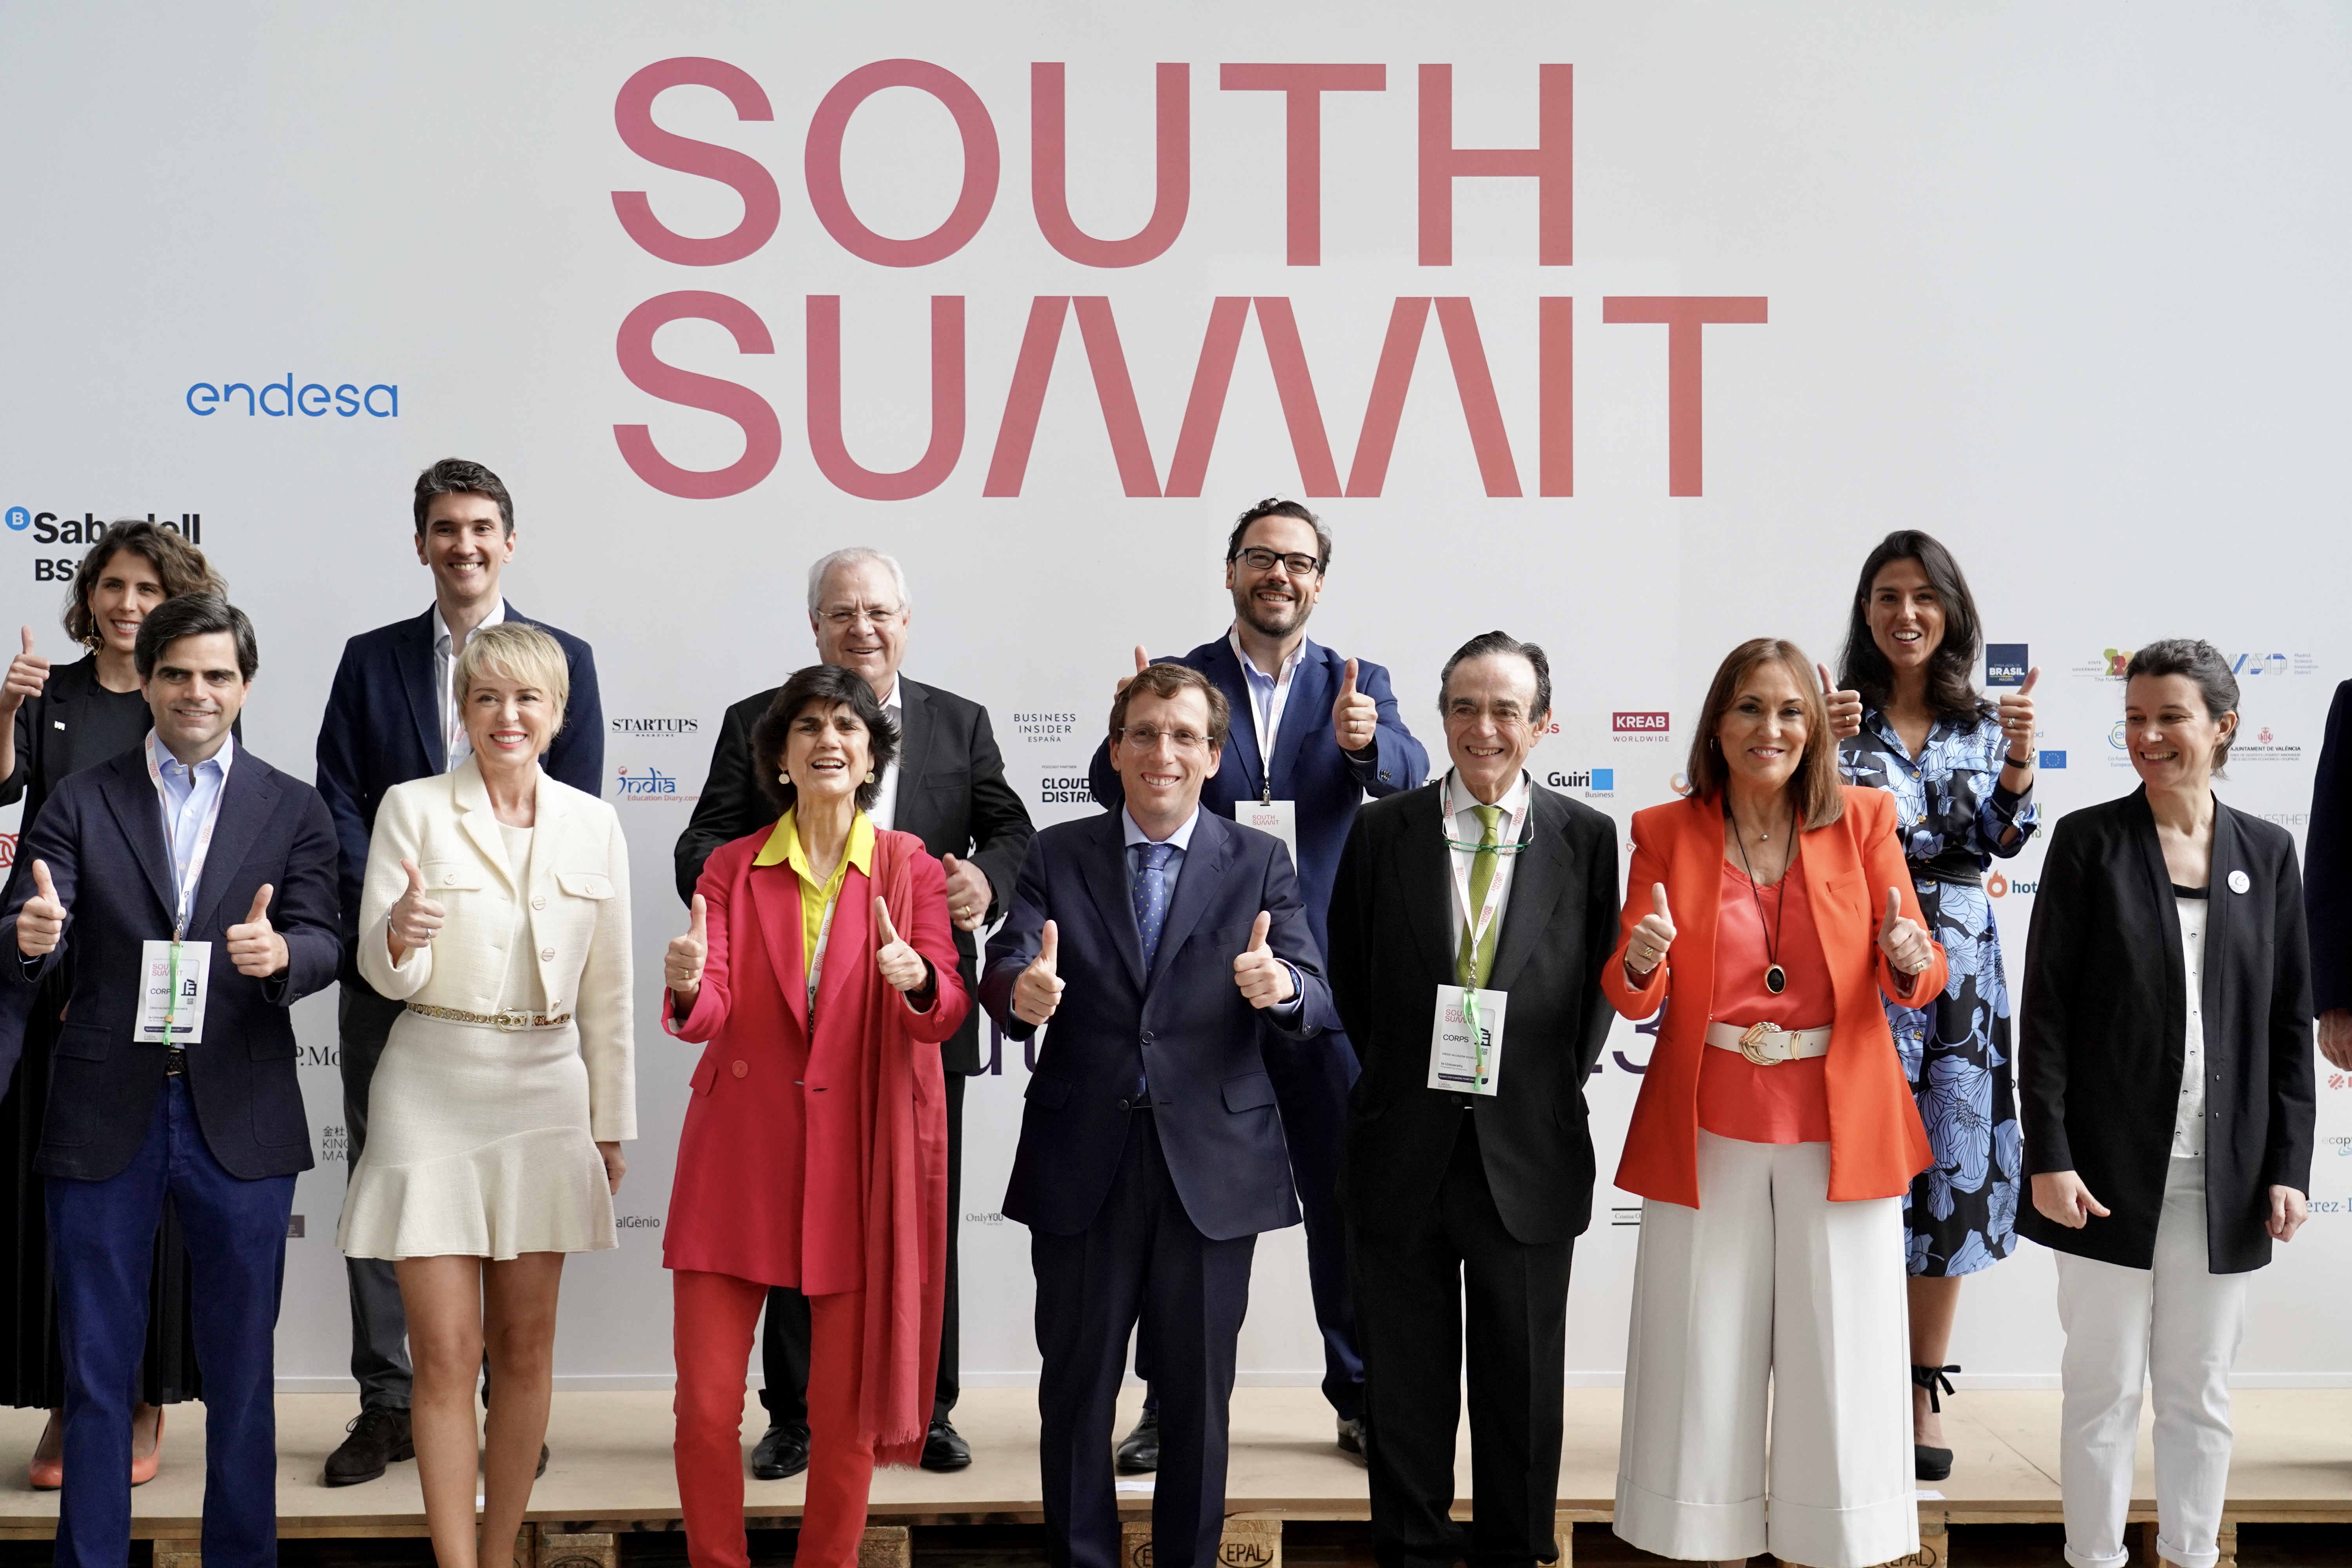 El alcalde de Madrid en funciones, Jose Luis Martínez-Almeida, junto a otras personas que han participado en la inauguración de South Summit